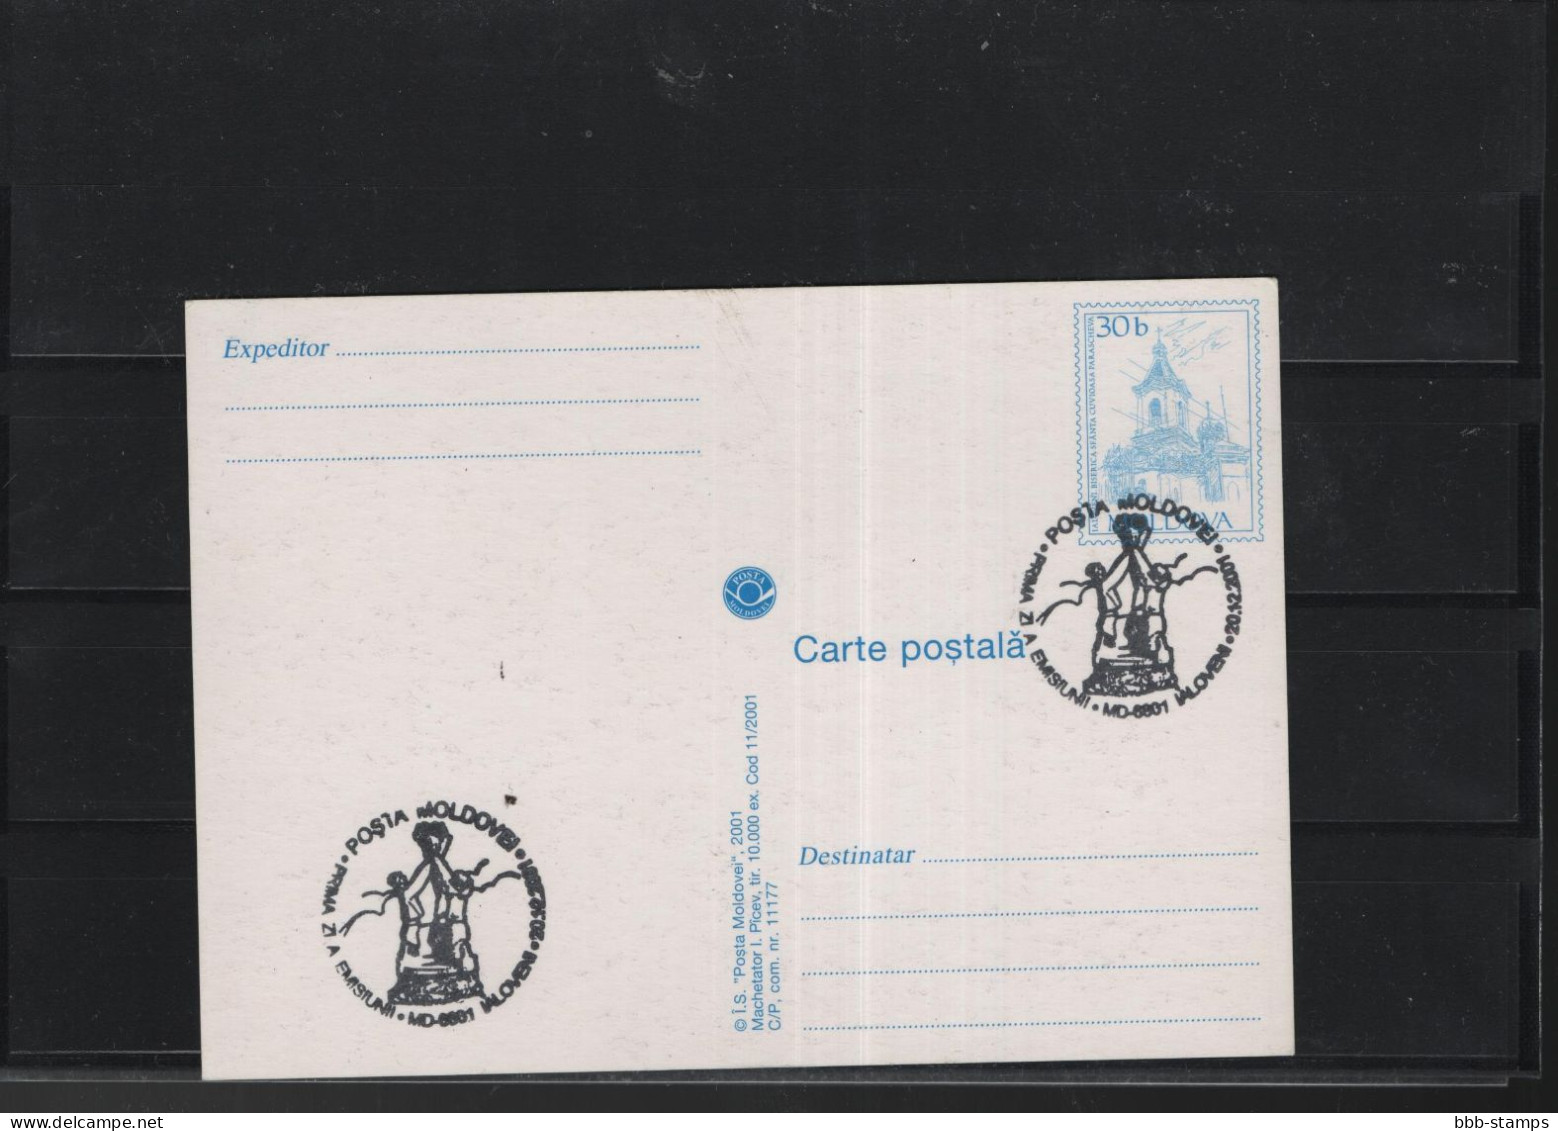 Moldavien Michel Cat.No. Postal Stat  Card Issued  20.12.2001 - Moldavië